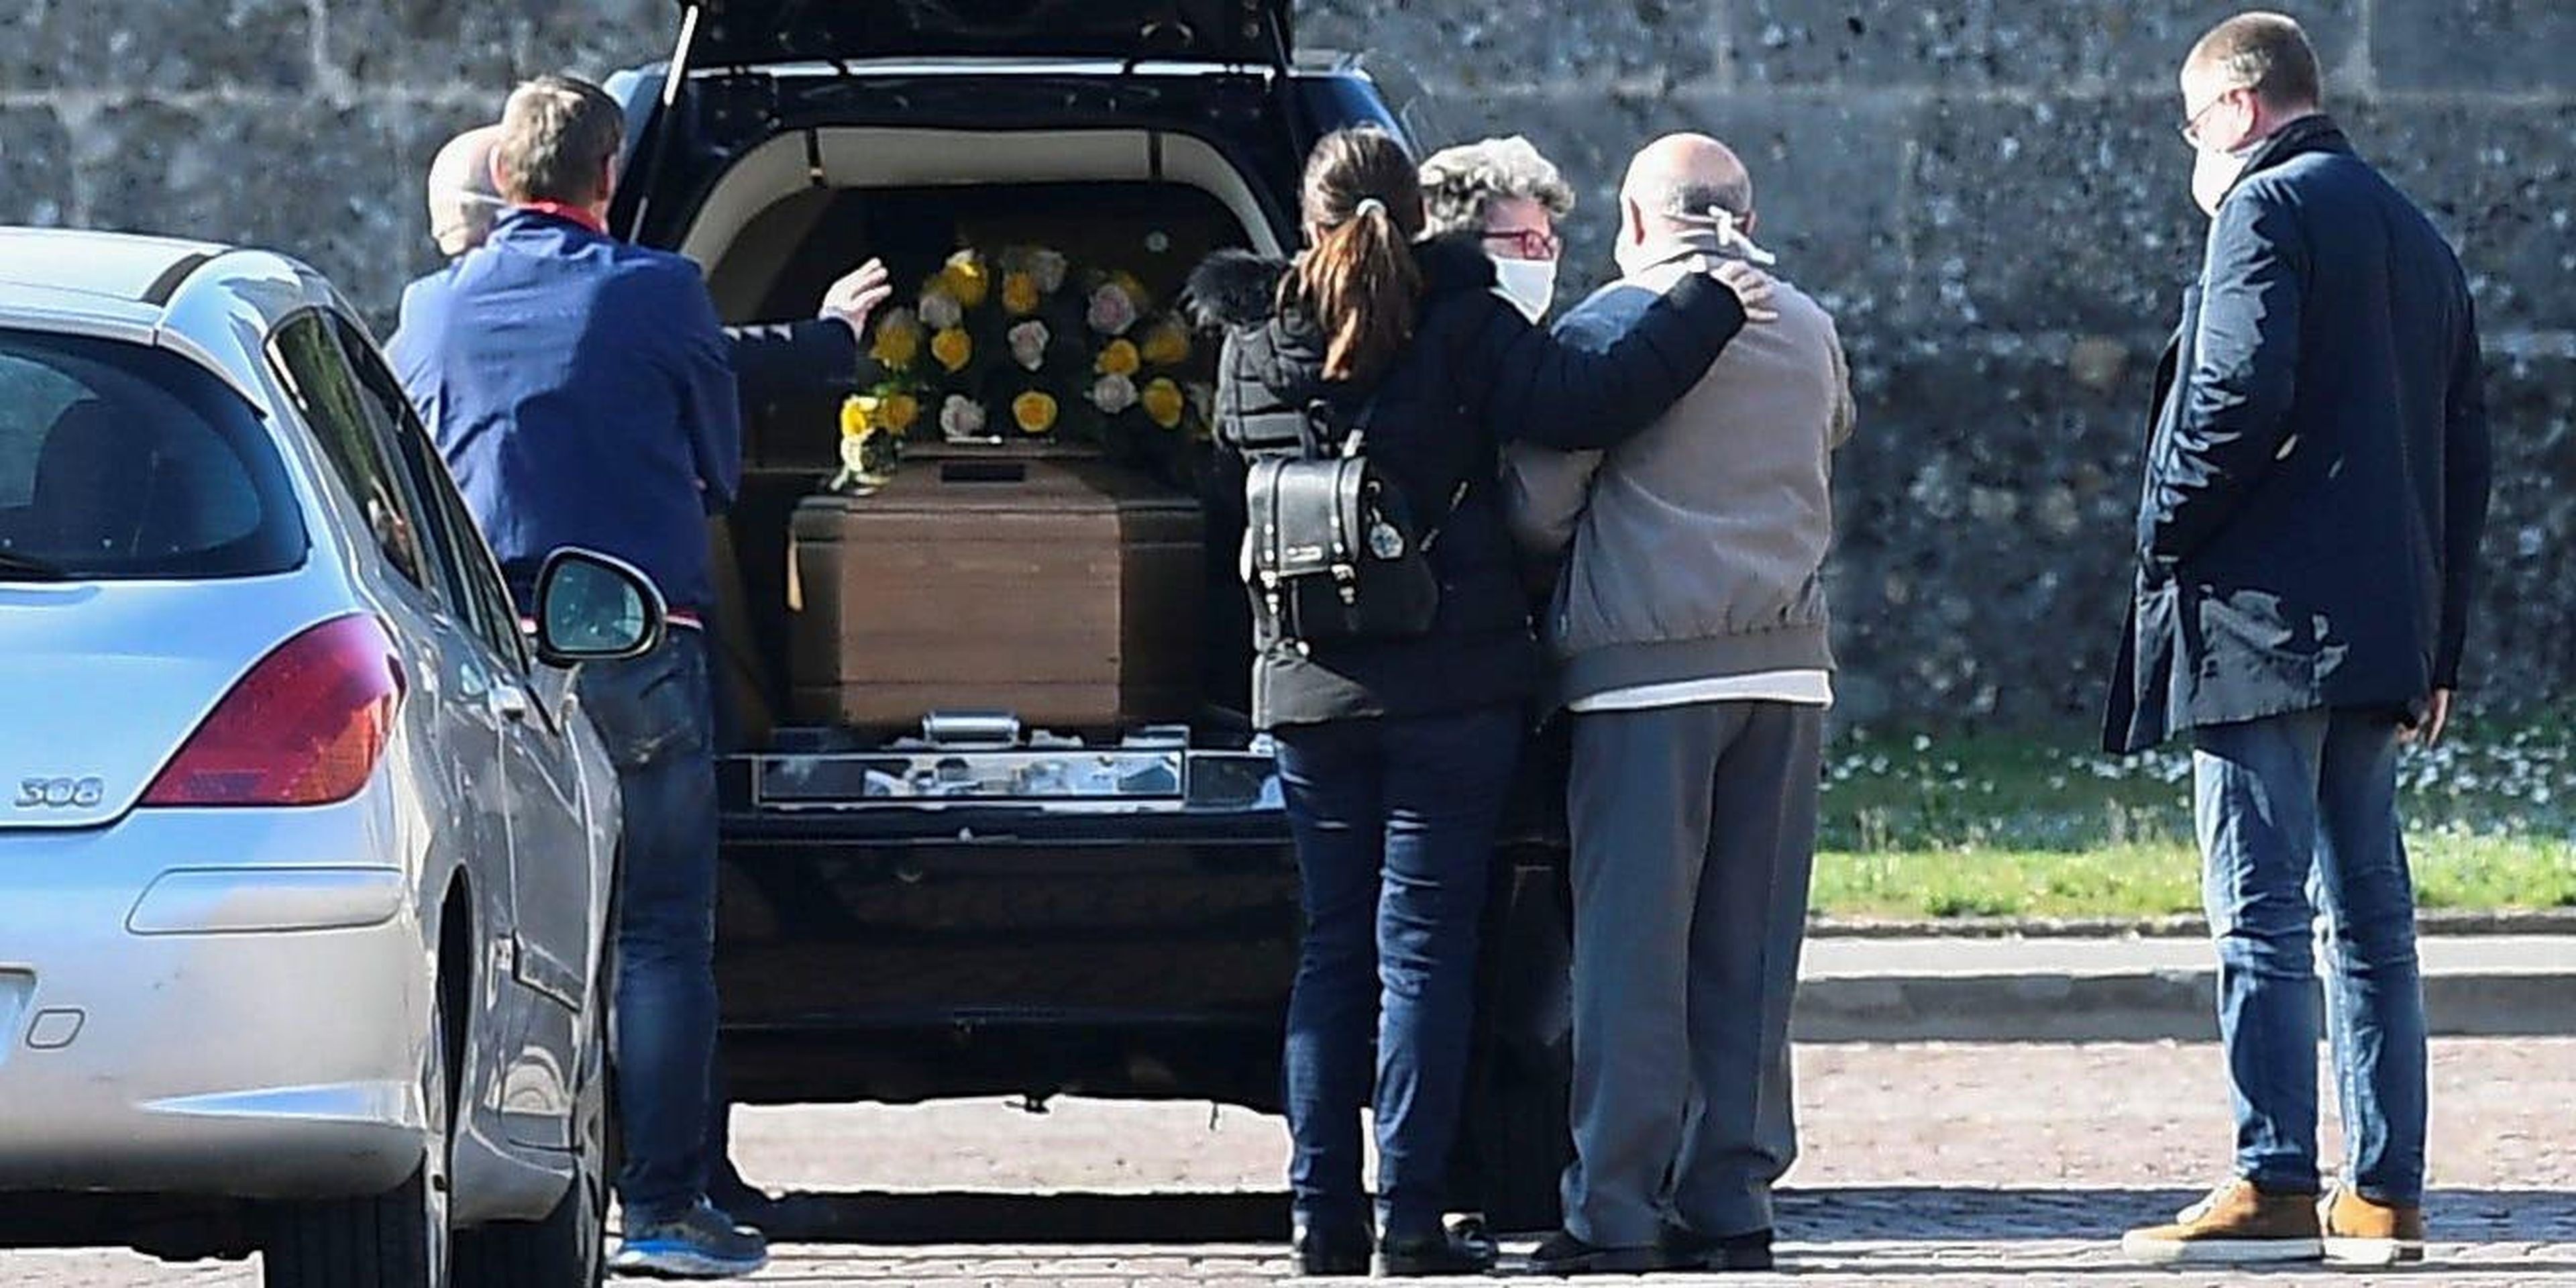 Familiares de una persona que murió por coronavirus (COVID-19) llegan a un cementerio en Bérgamo, Italia el 16 de marzo de 2020.